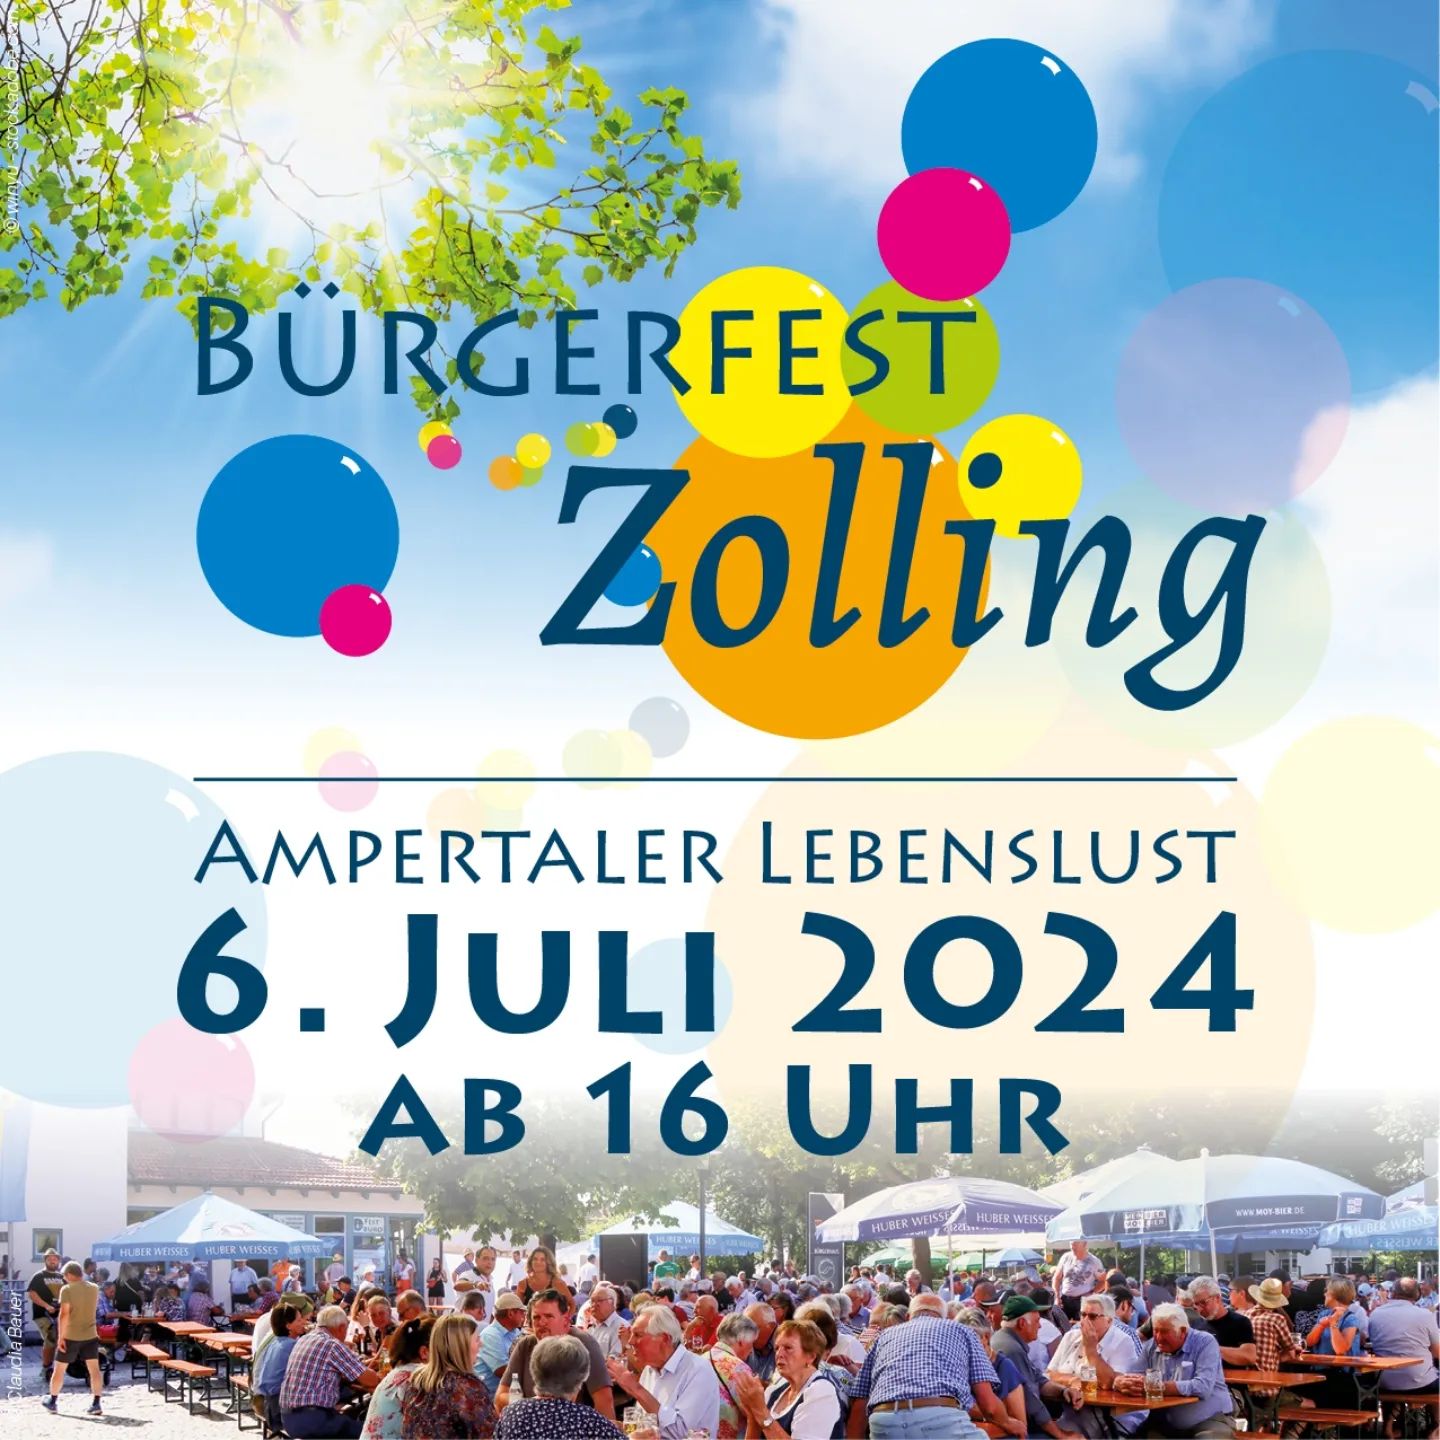 Nächsten Samstag ist es wieder soweit, ab 16 Uhr findet das Bürgerfest in Zolling rund um den Rathausplatz und das Bürgerhaus statt.
Auch der Musikverein in Zolling e.V. ist mit dabei, von 16 bis 19 ...